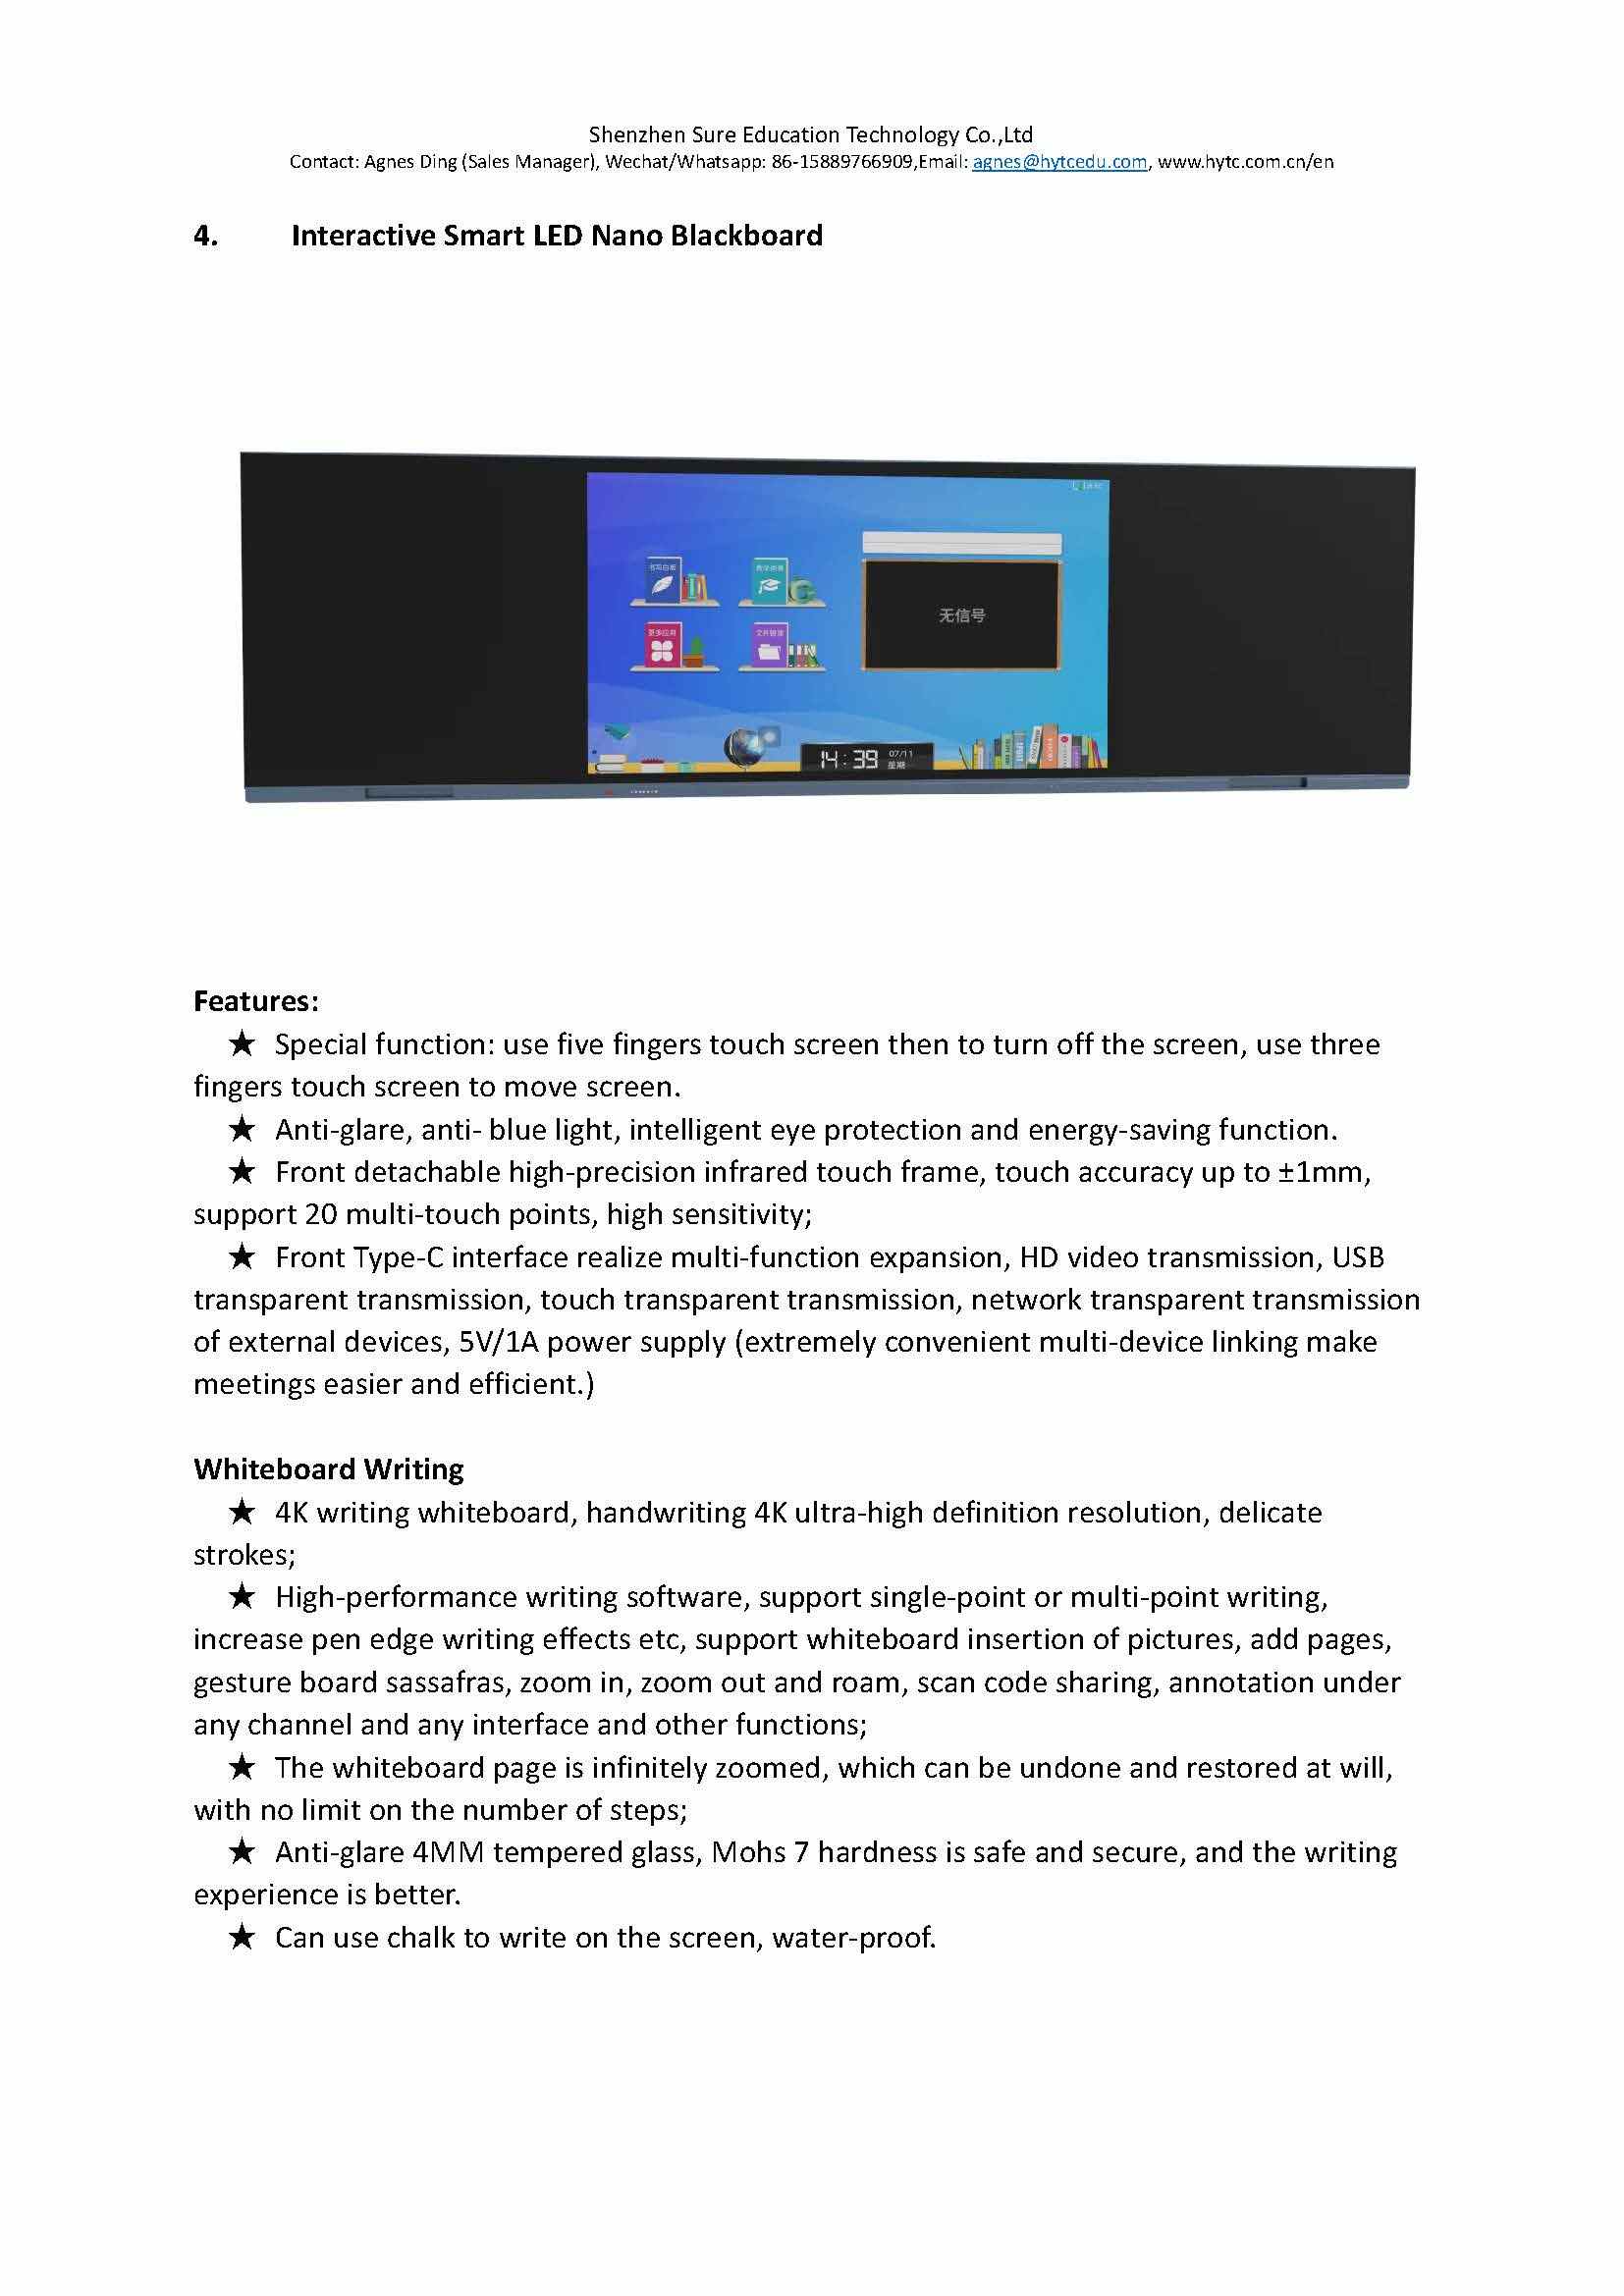 Multi touch interactive smart blackboard waterproof & dustproof LED touch screen writing board